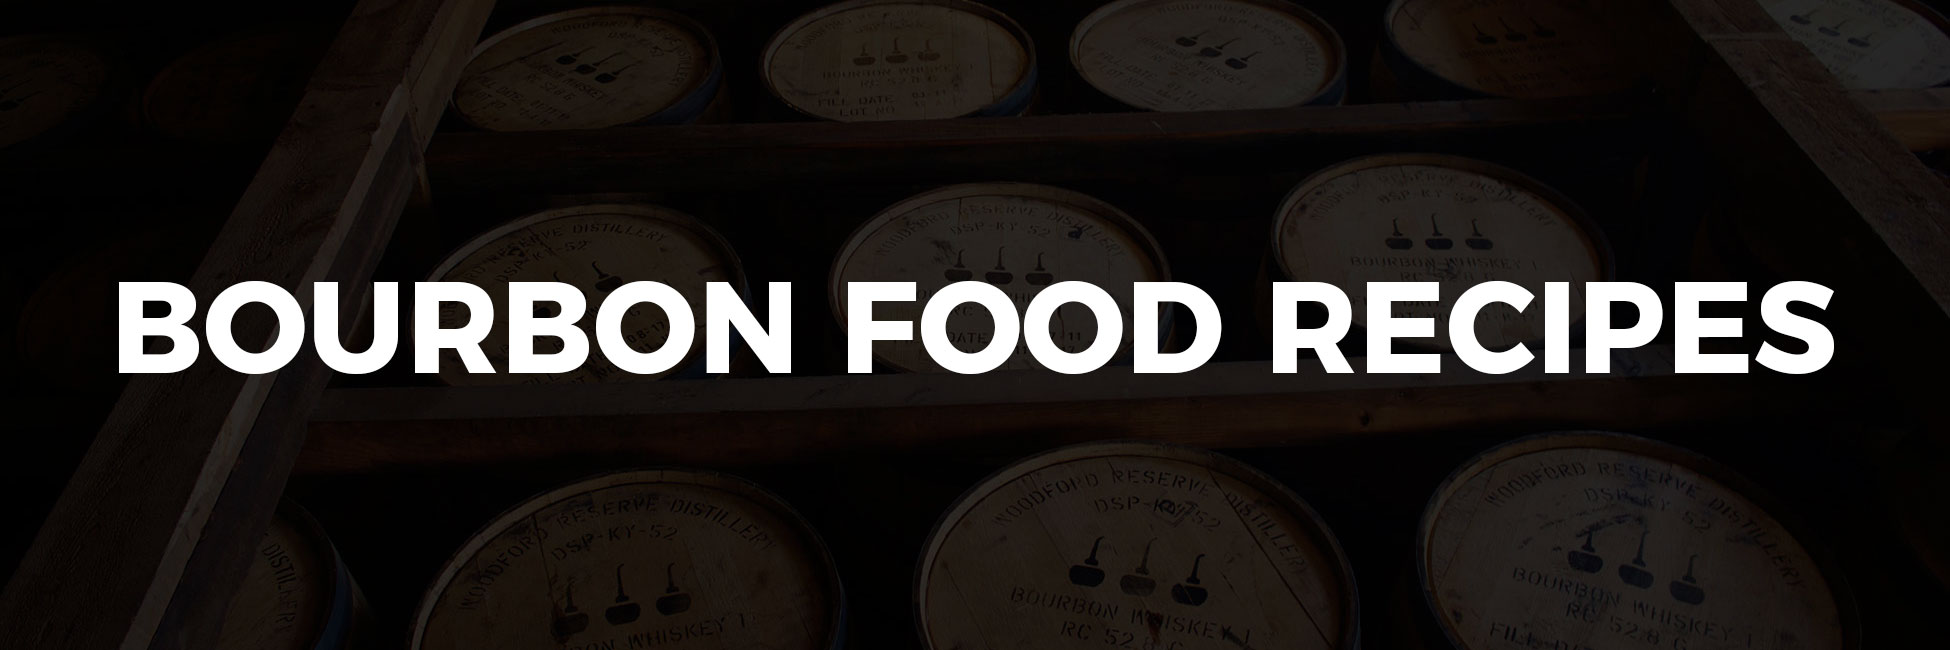 Bourbon Food Recipes